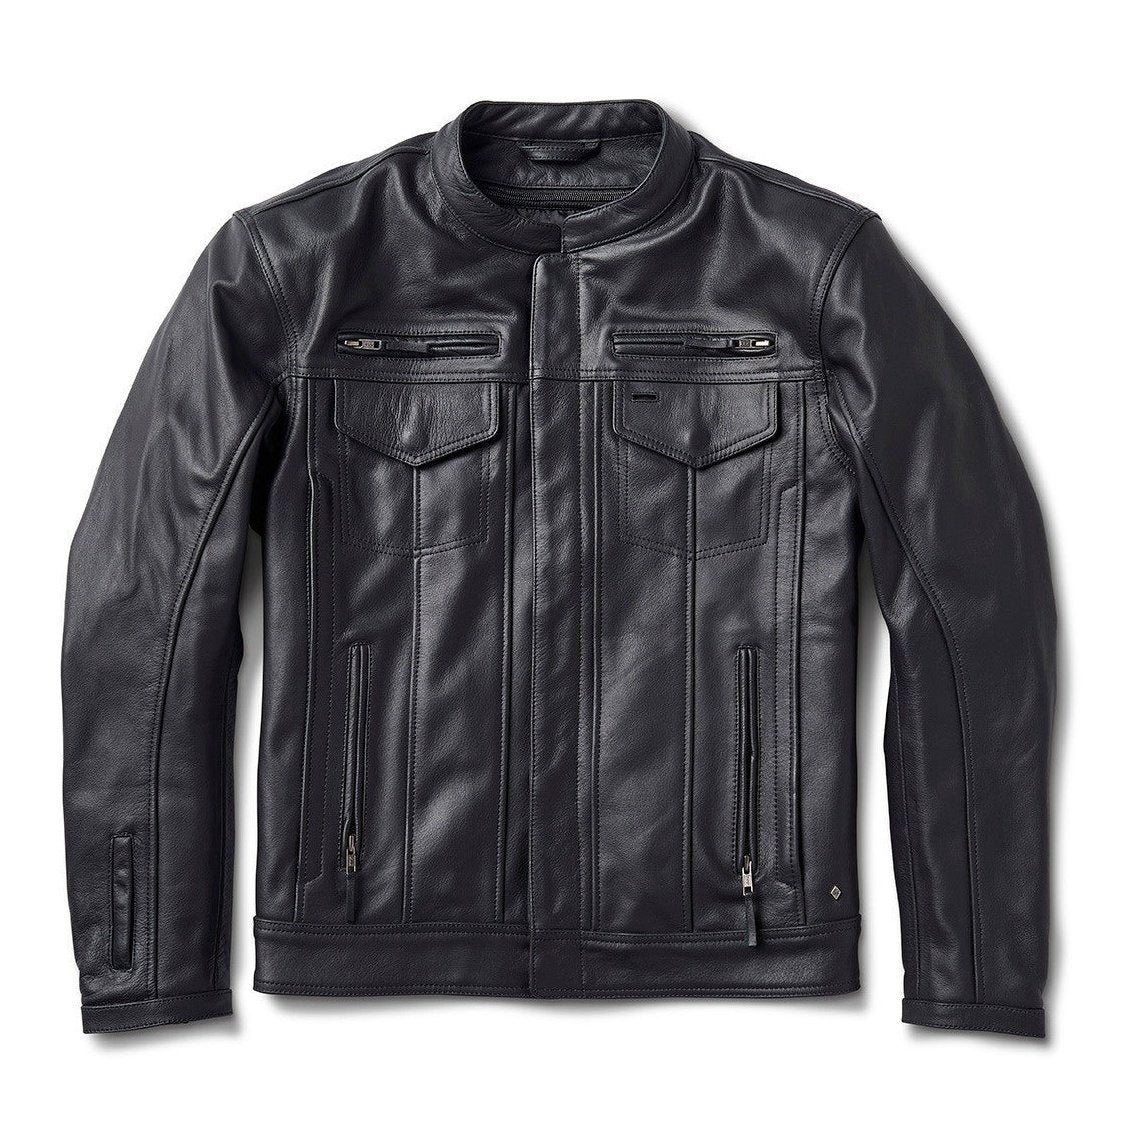 Paramount 74 Leather Jacket